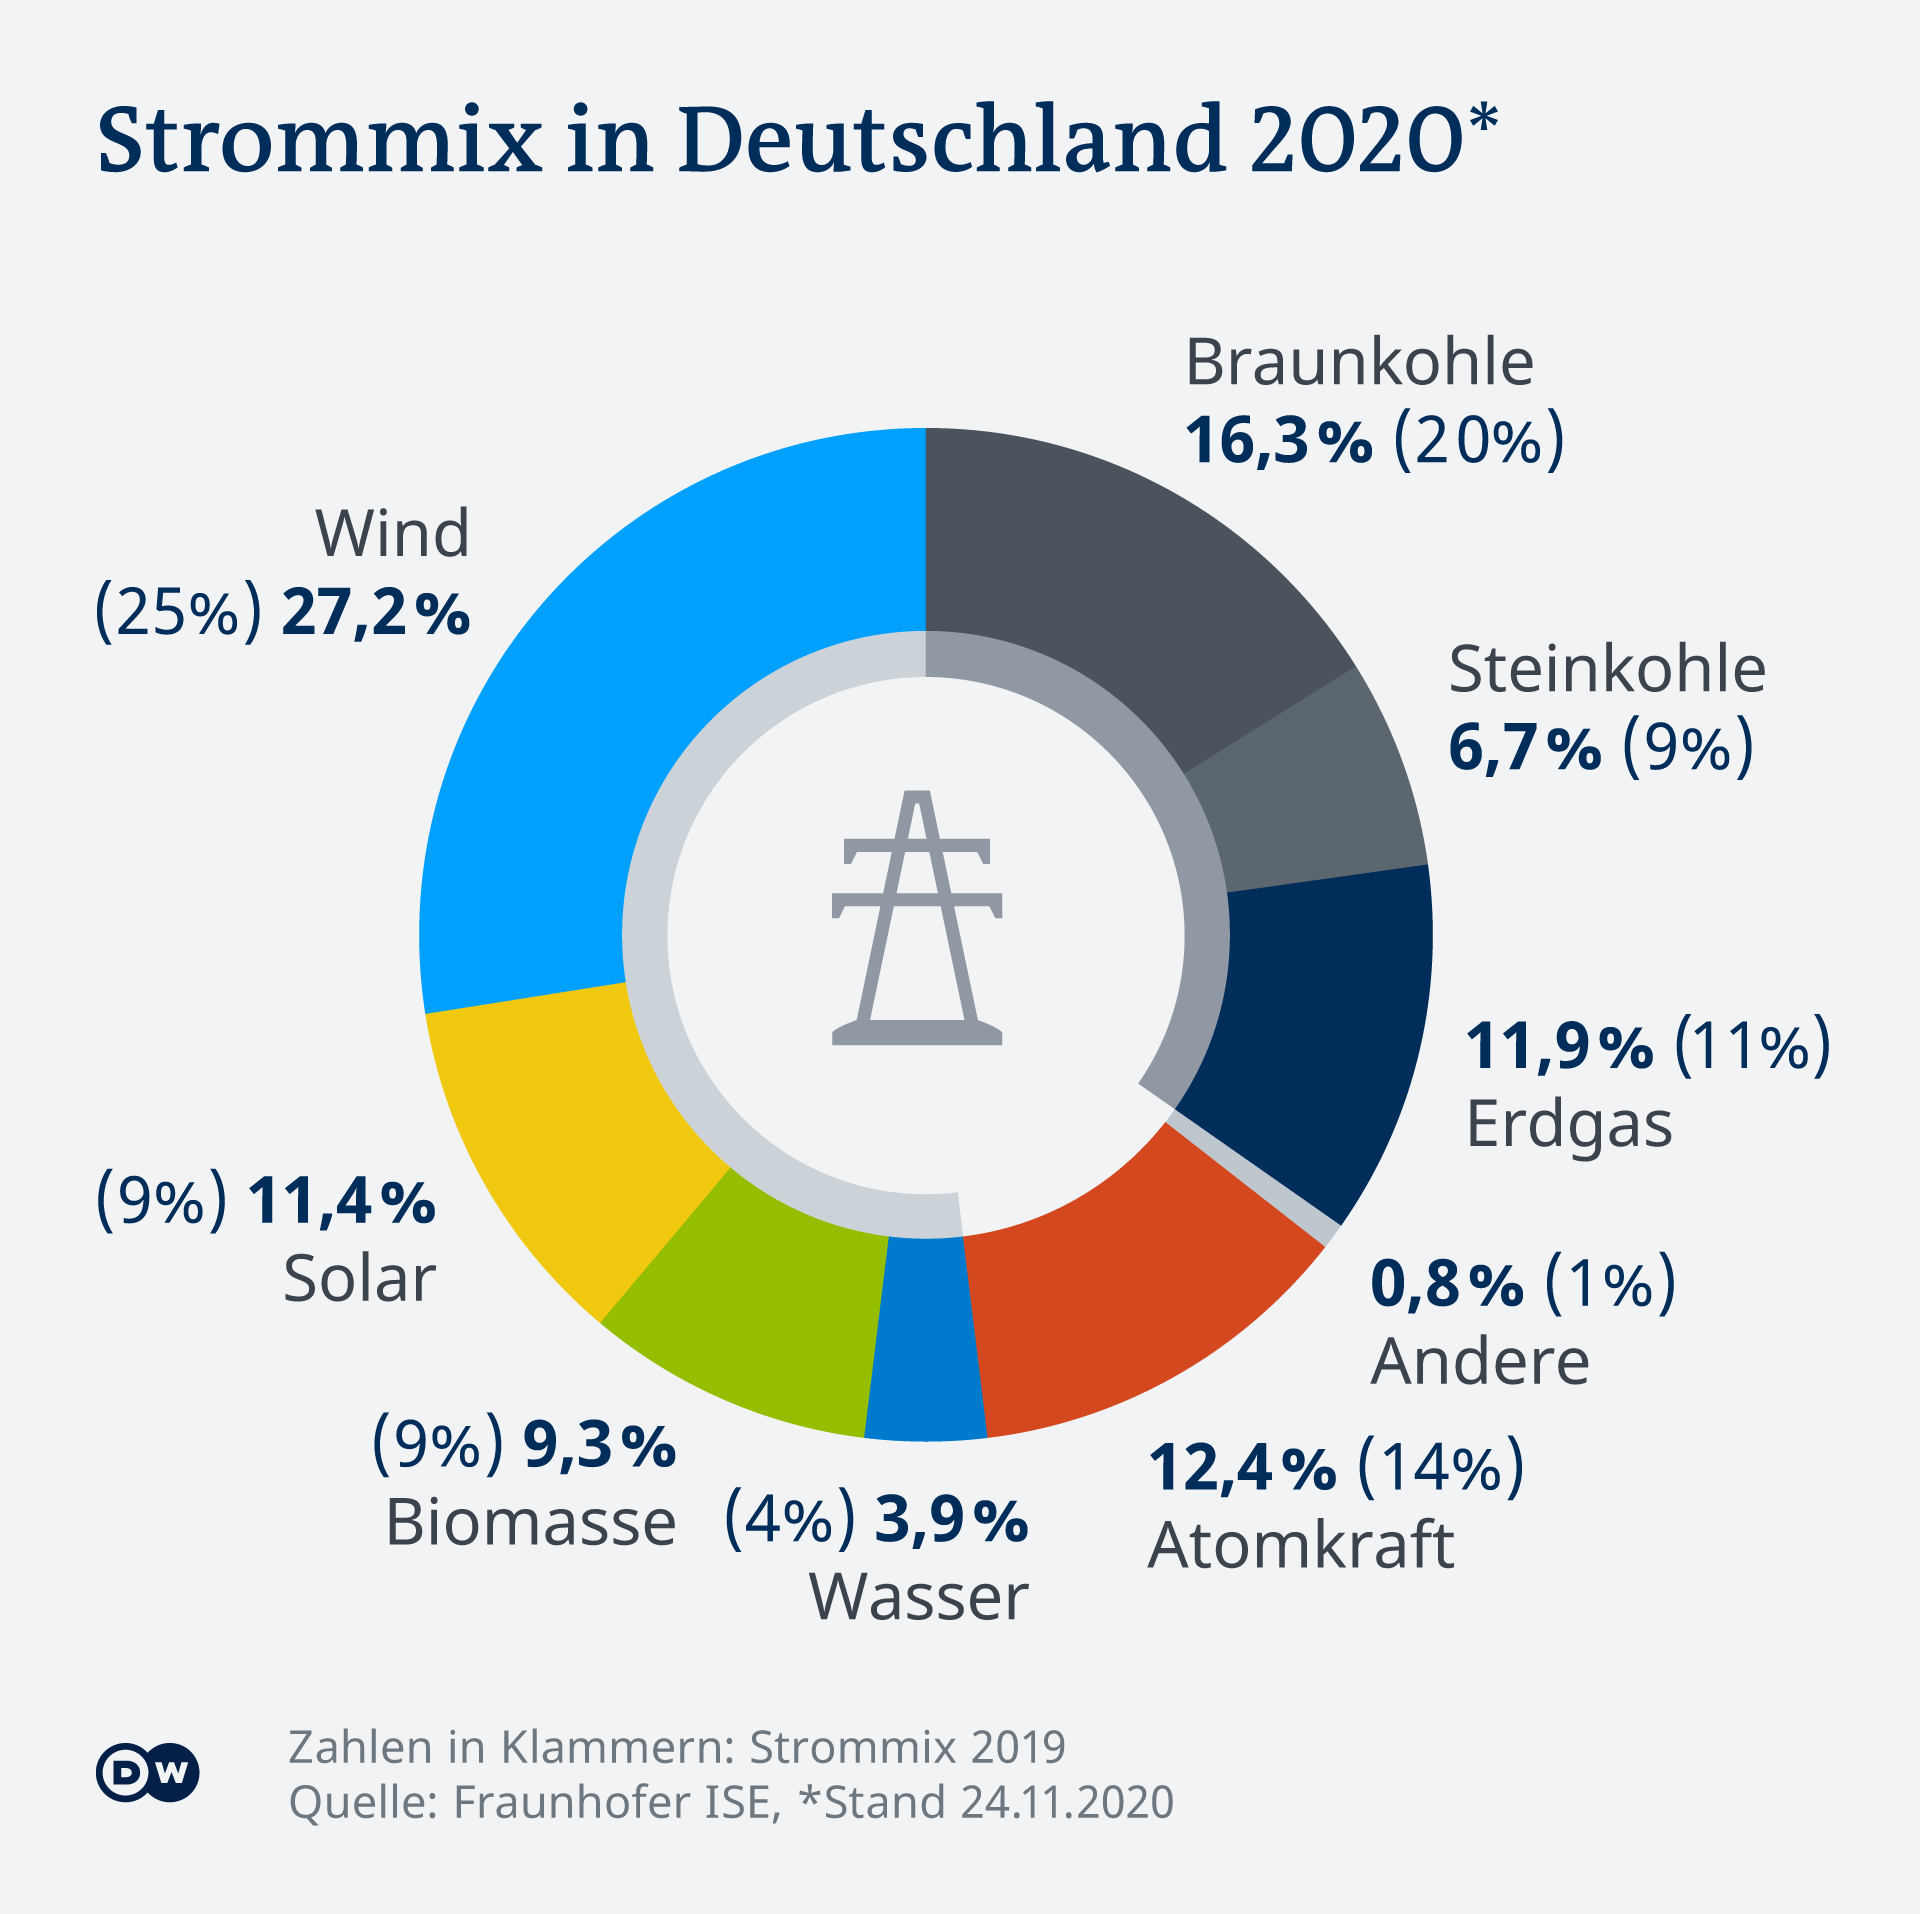  Тези типове сила се крият в тока, създаван в Германия: делът на атомната е 12,4% (в скобите са данните за 2019) 